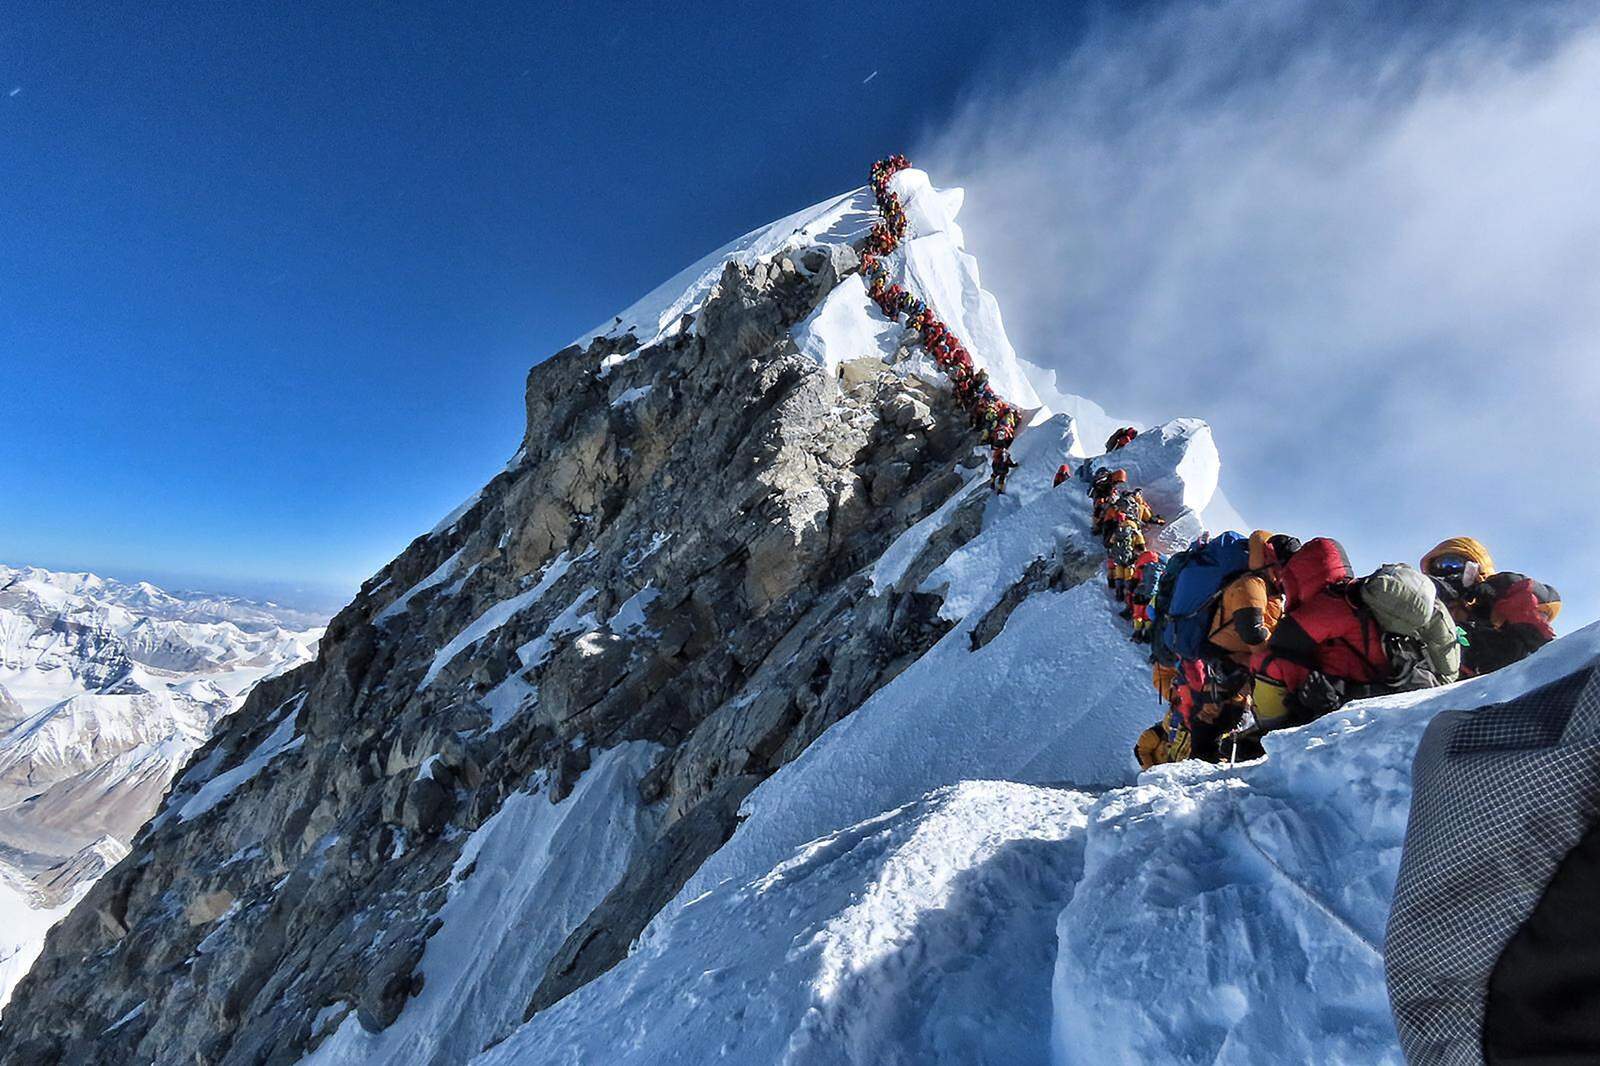 Der höchste Berg der Welt, der Mount Everest, wurde am 29. Mai 1953 erstmals bestiegen